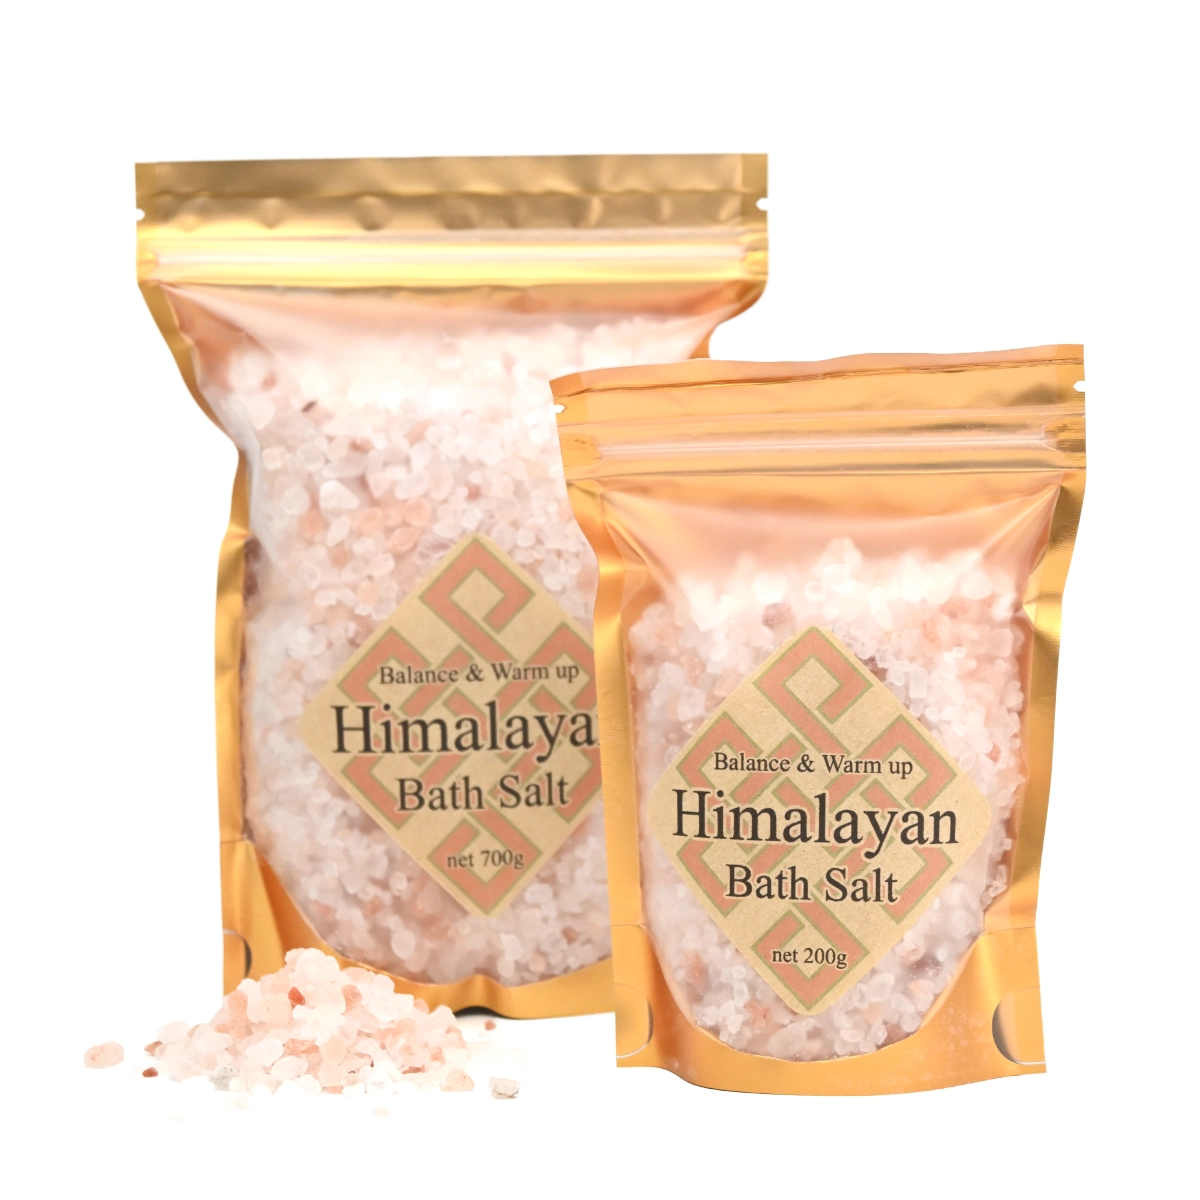 Himalayan Bath Salt (Natural)